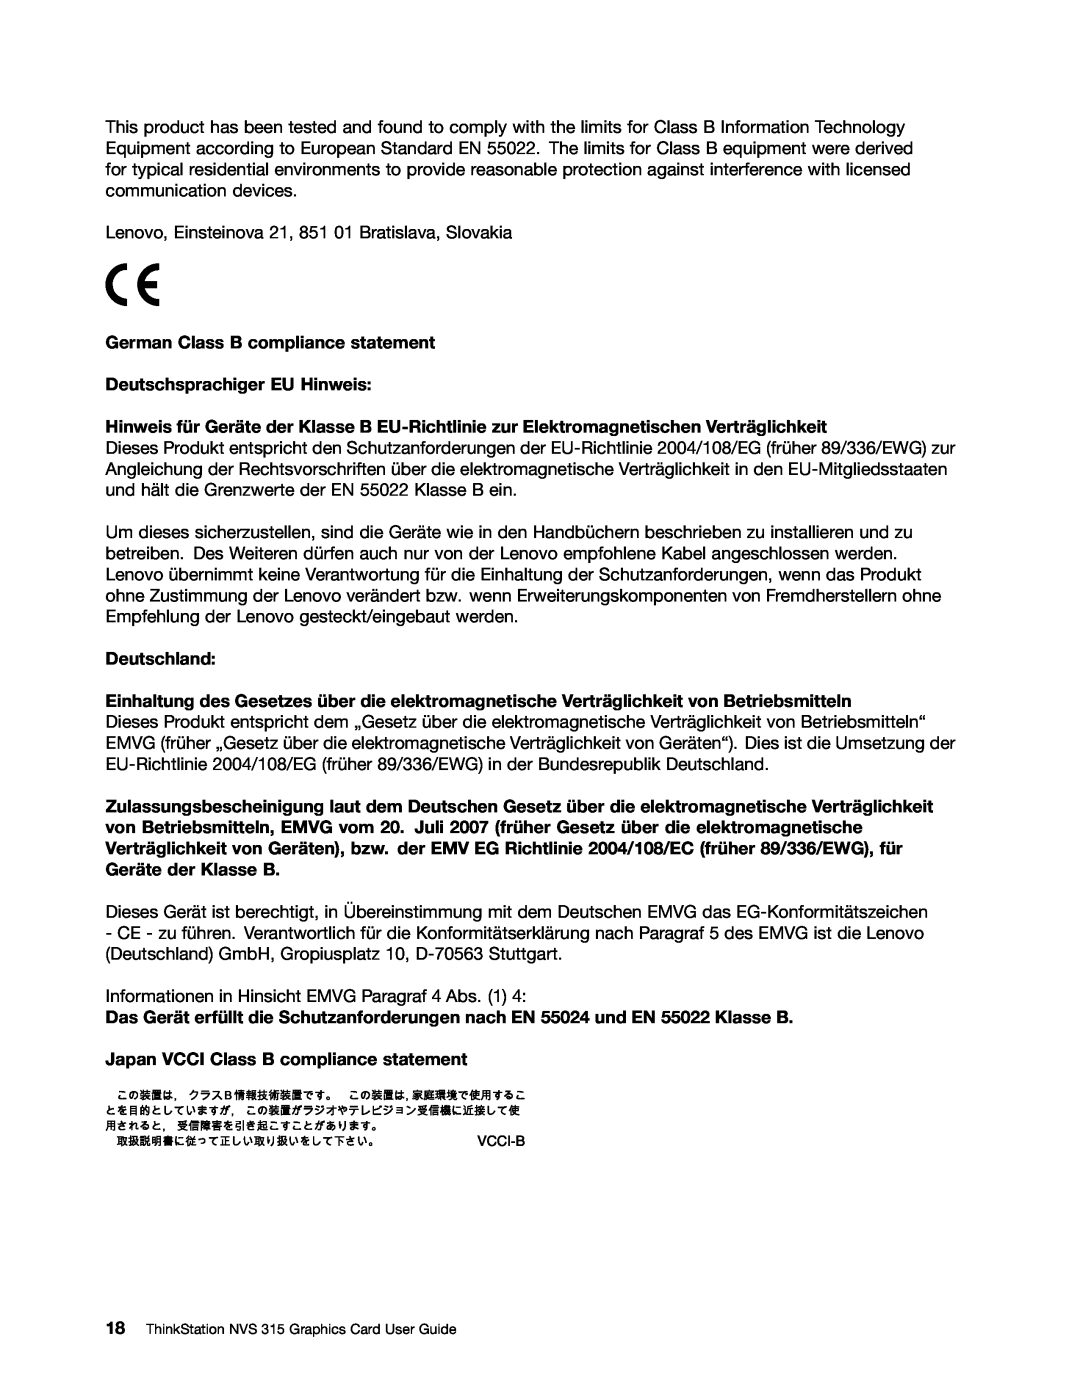 Lenovo NVS 315 manual German Class B compliance statement, Deutschsprachiger EU Hinweis, Deutschland 